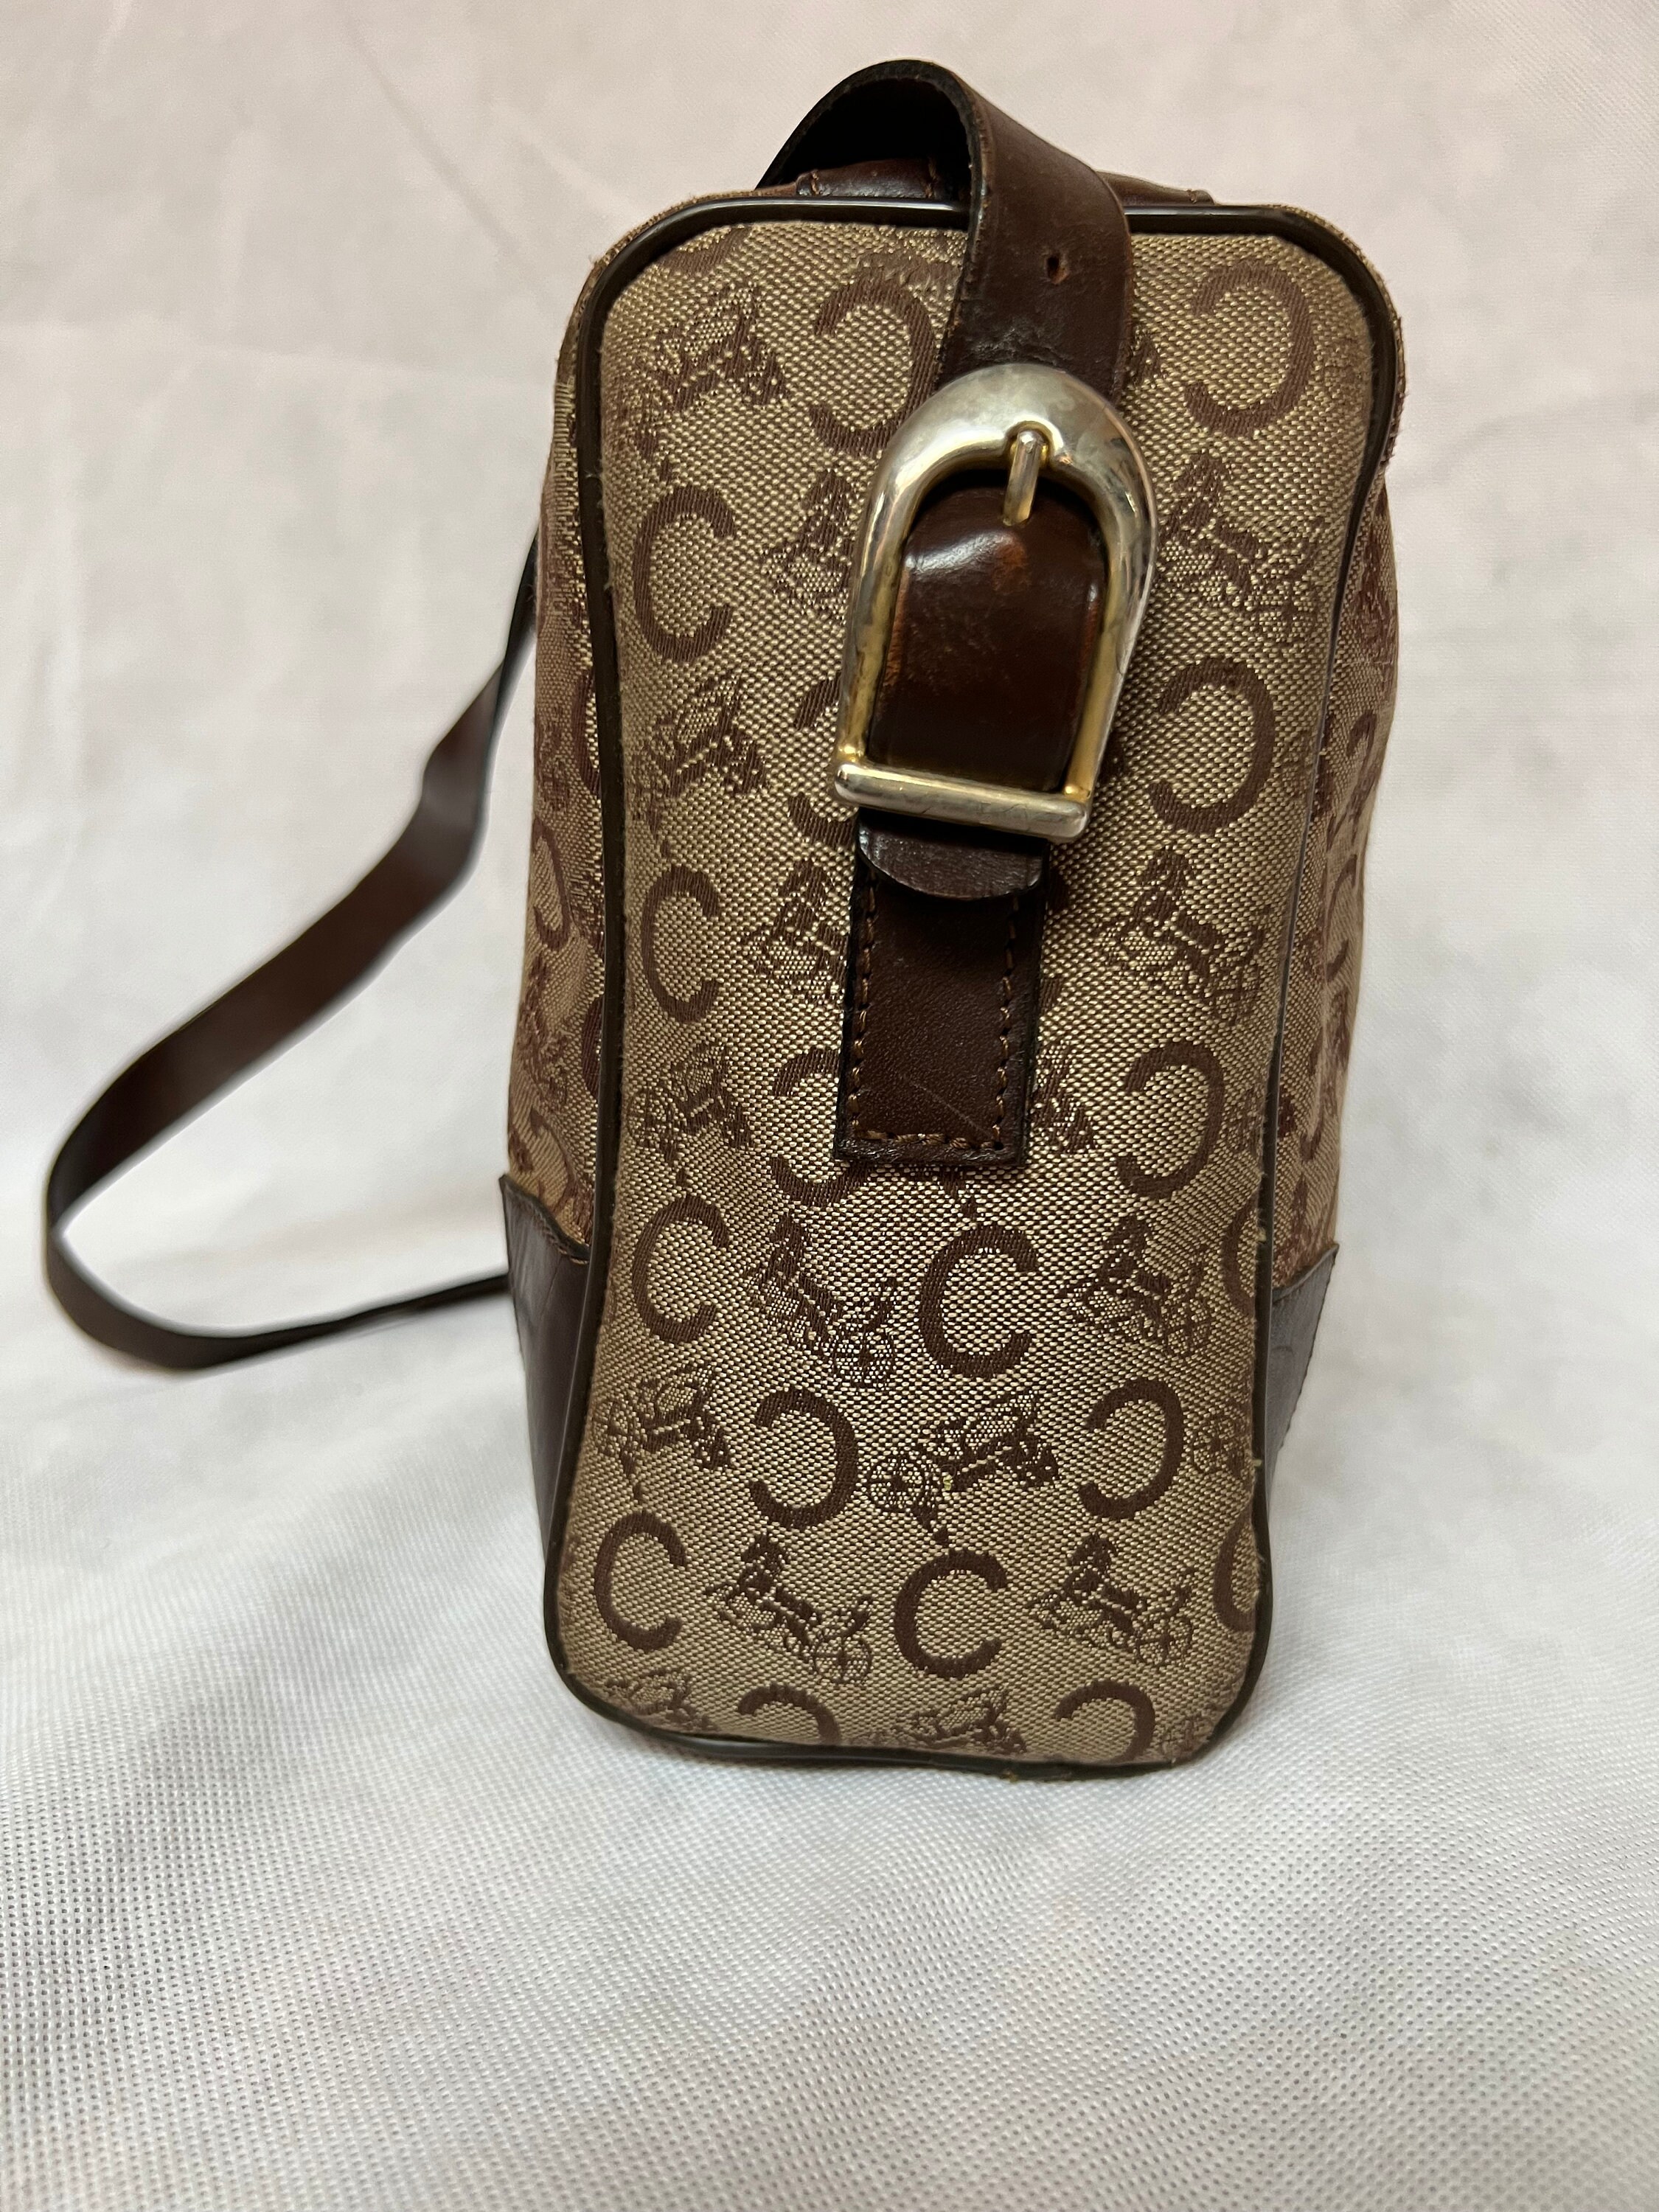 Vintage Monogram Celine Bag in Brown Canvas and Leather. Luxury Vintage Celine Wallet. Celine Long Strap Wallet. Celine Bag Gift for Her.